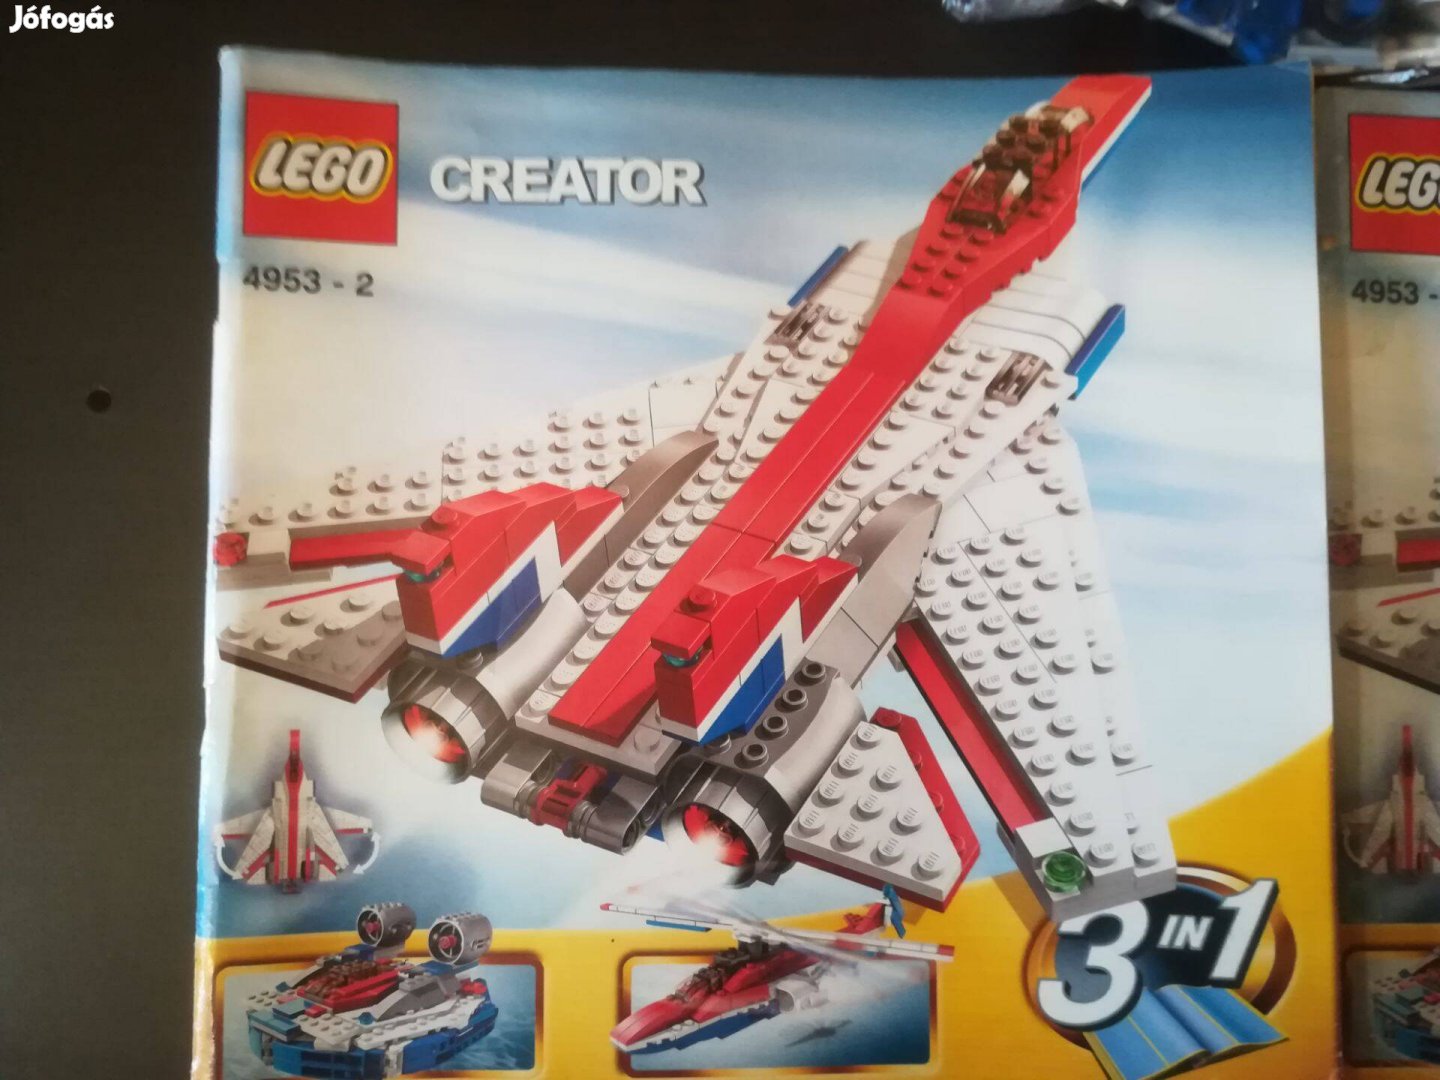 Lego Creator 4953 használt készlet